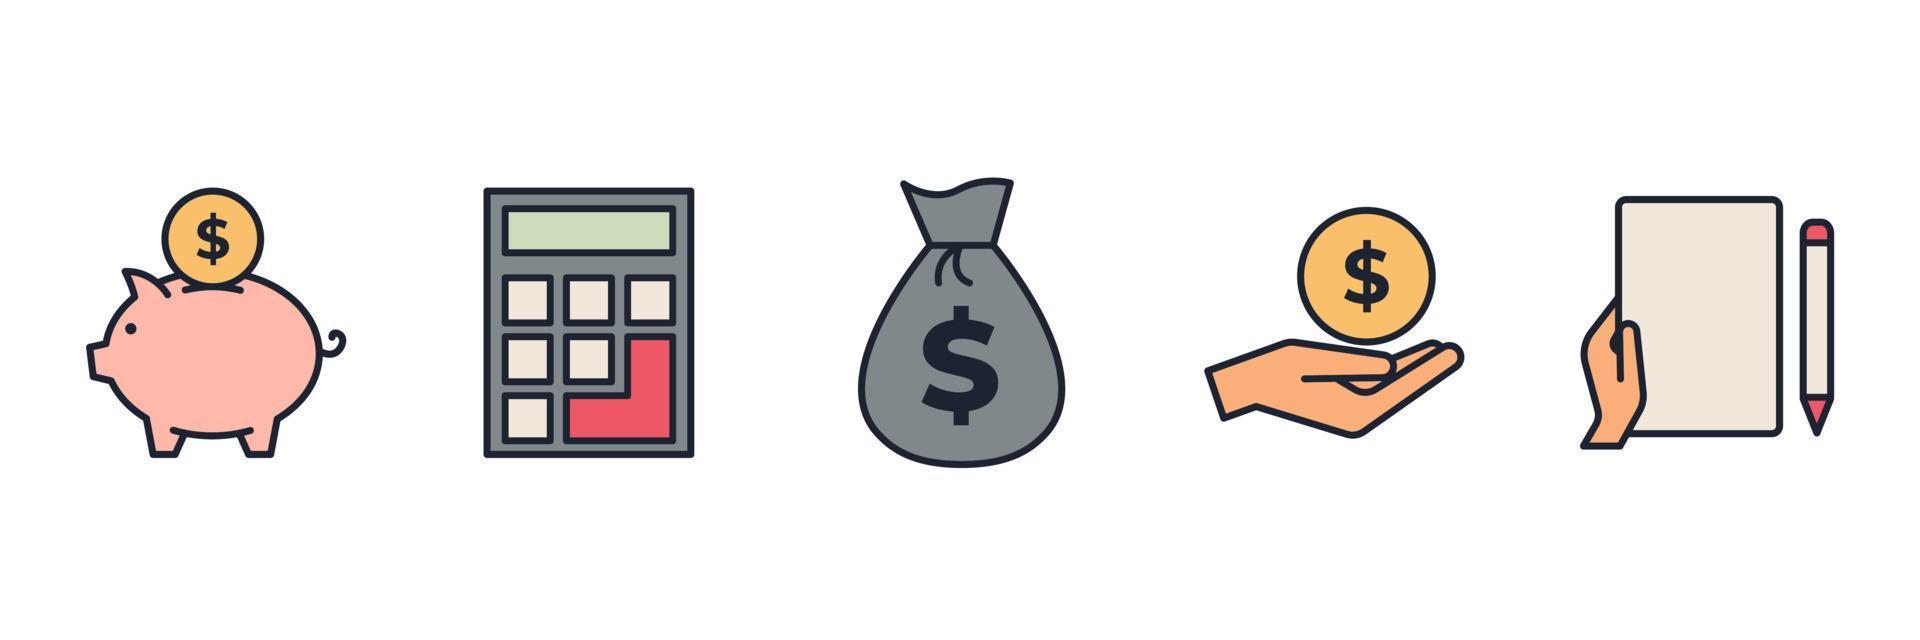 Geschäfts- und Finanzelemente setzen Symbolsymbolvorlage für Grafik- und Webdesign-Sammlung Logo-Vektorillustration vektor